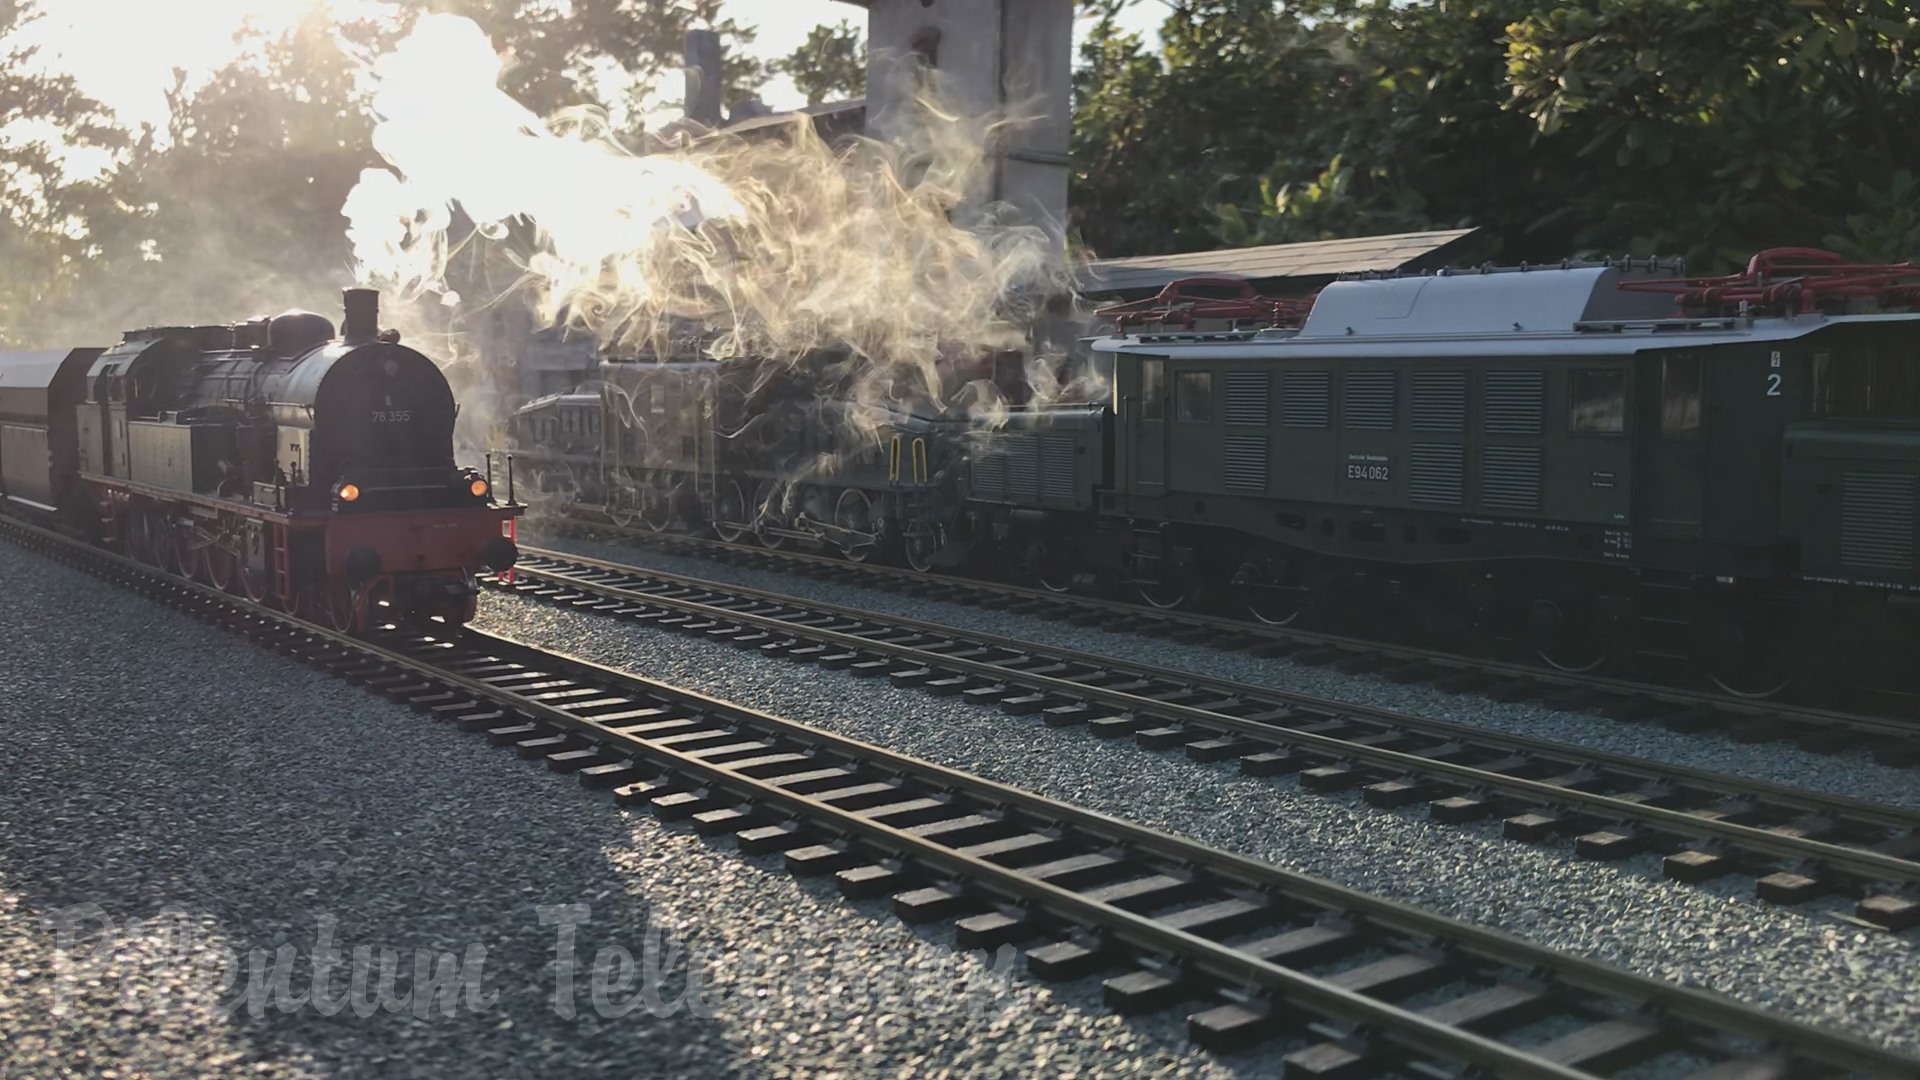 Modelismo Ferroviario Chile: Garden Railway Layout Tour - Steam Locomotive and Diesel Trains Galore